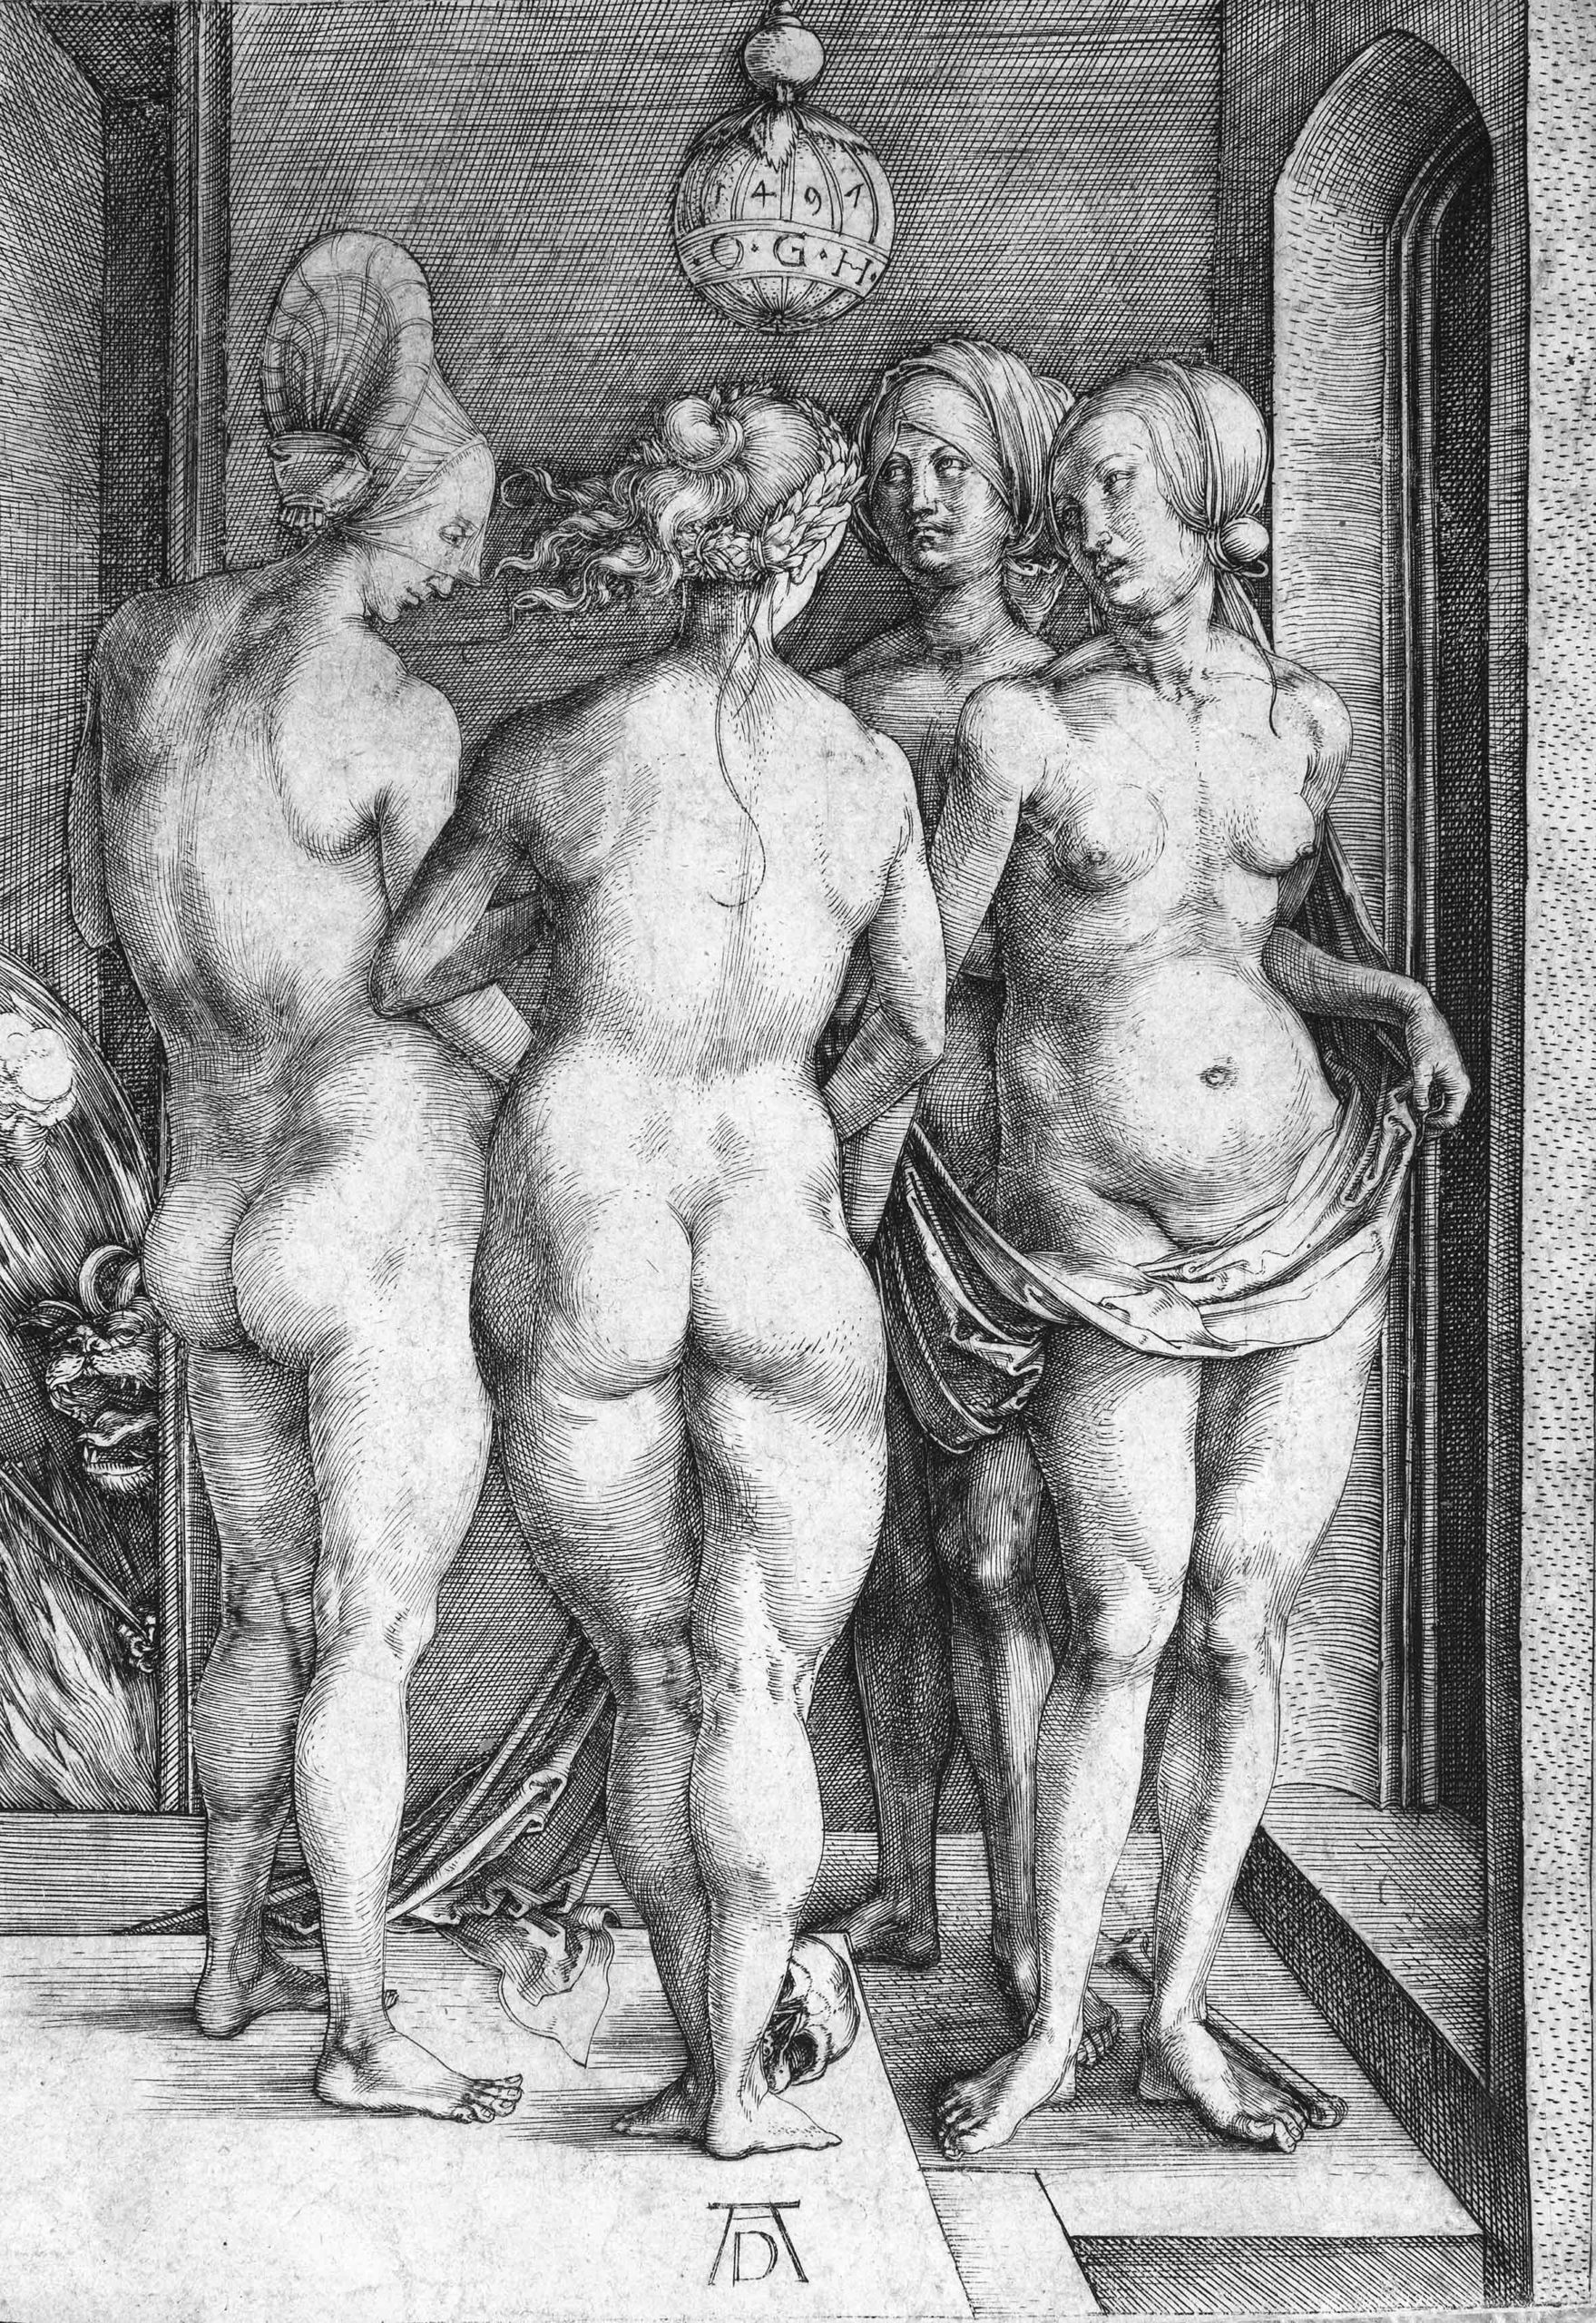 Albrecht Dürer, De fire hekse, 1497, Nürnberg. Radering. Michael Fornitz collection